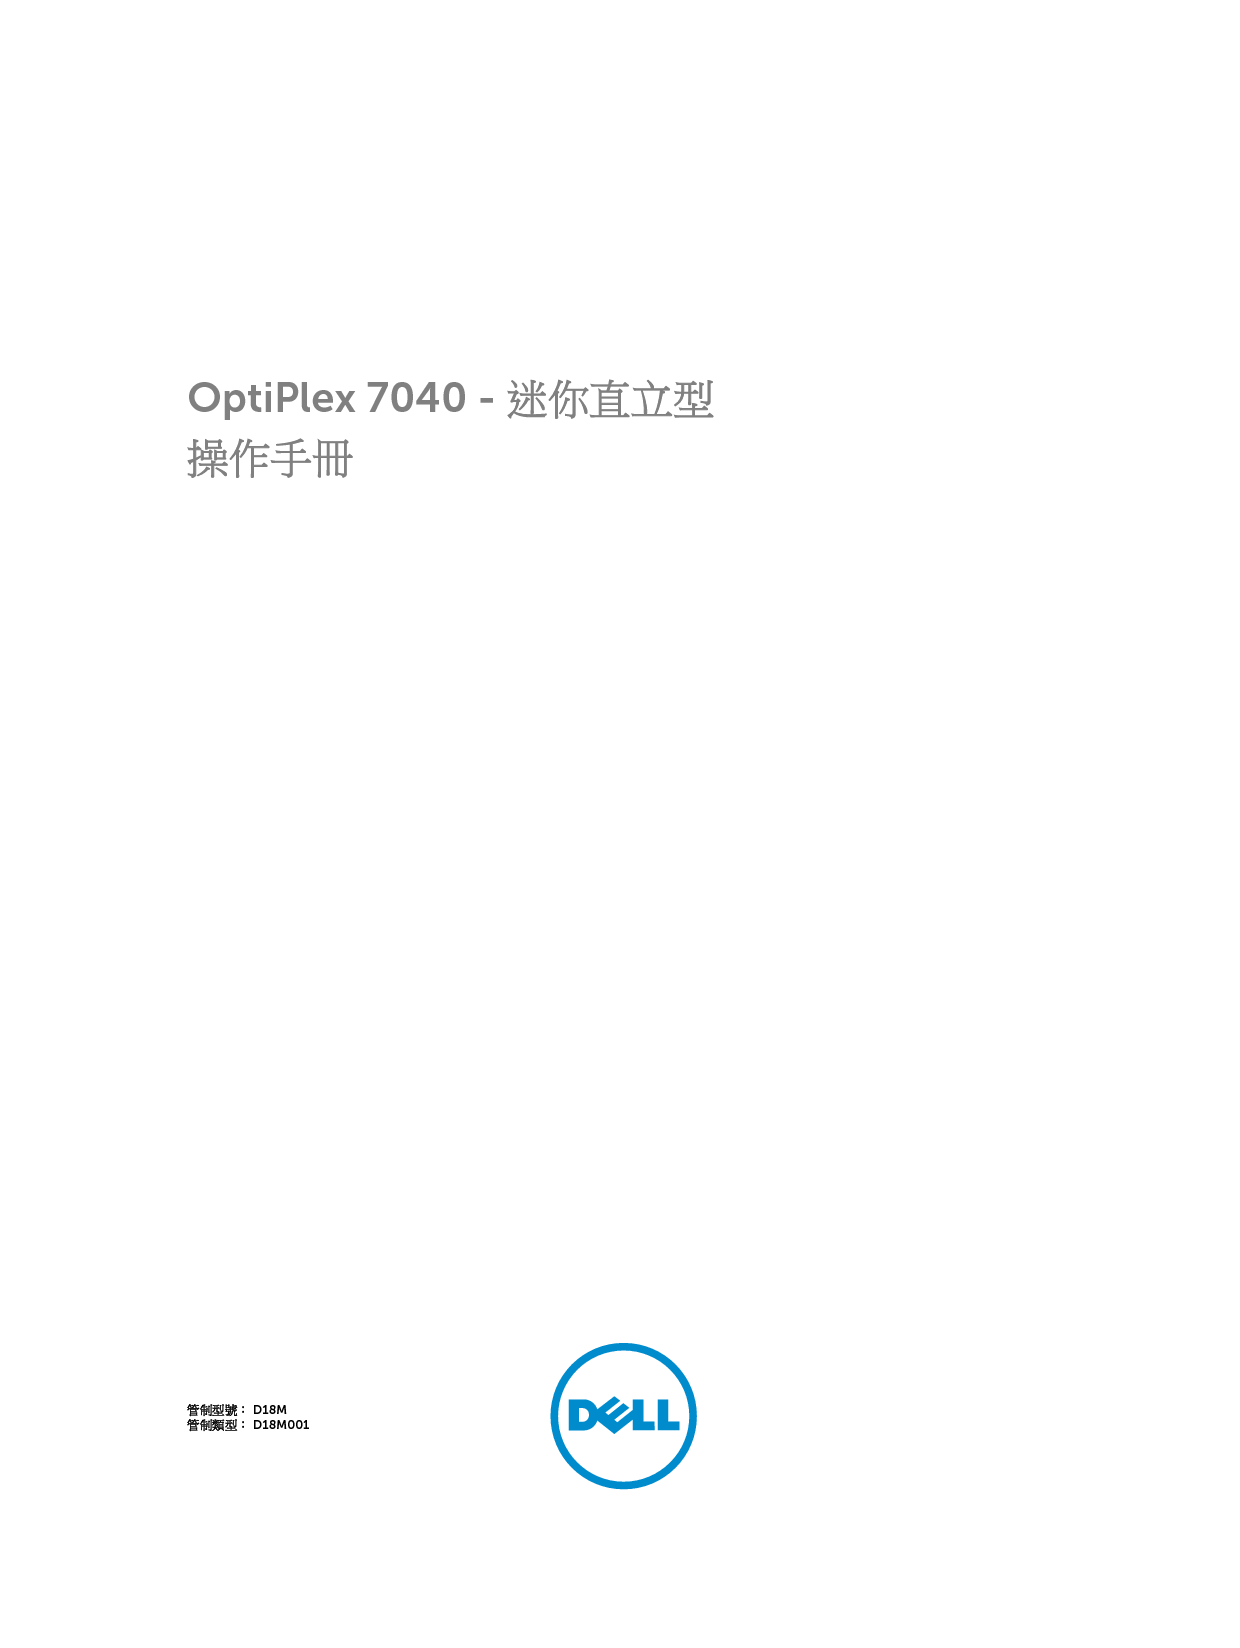 戴尔 Dell Optiplex 7040 小型塔式 繁体 用户手册 封面